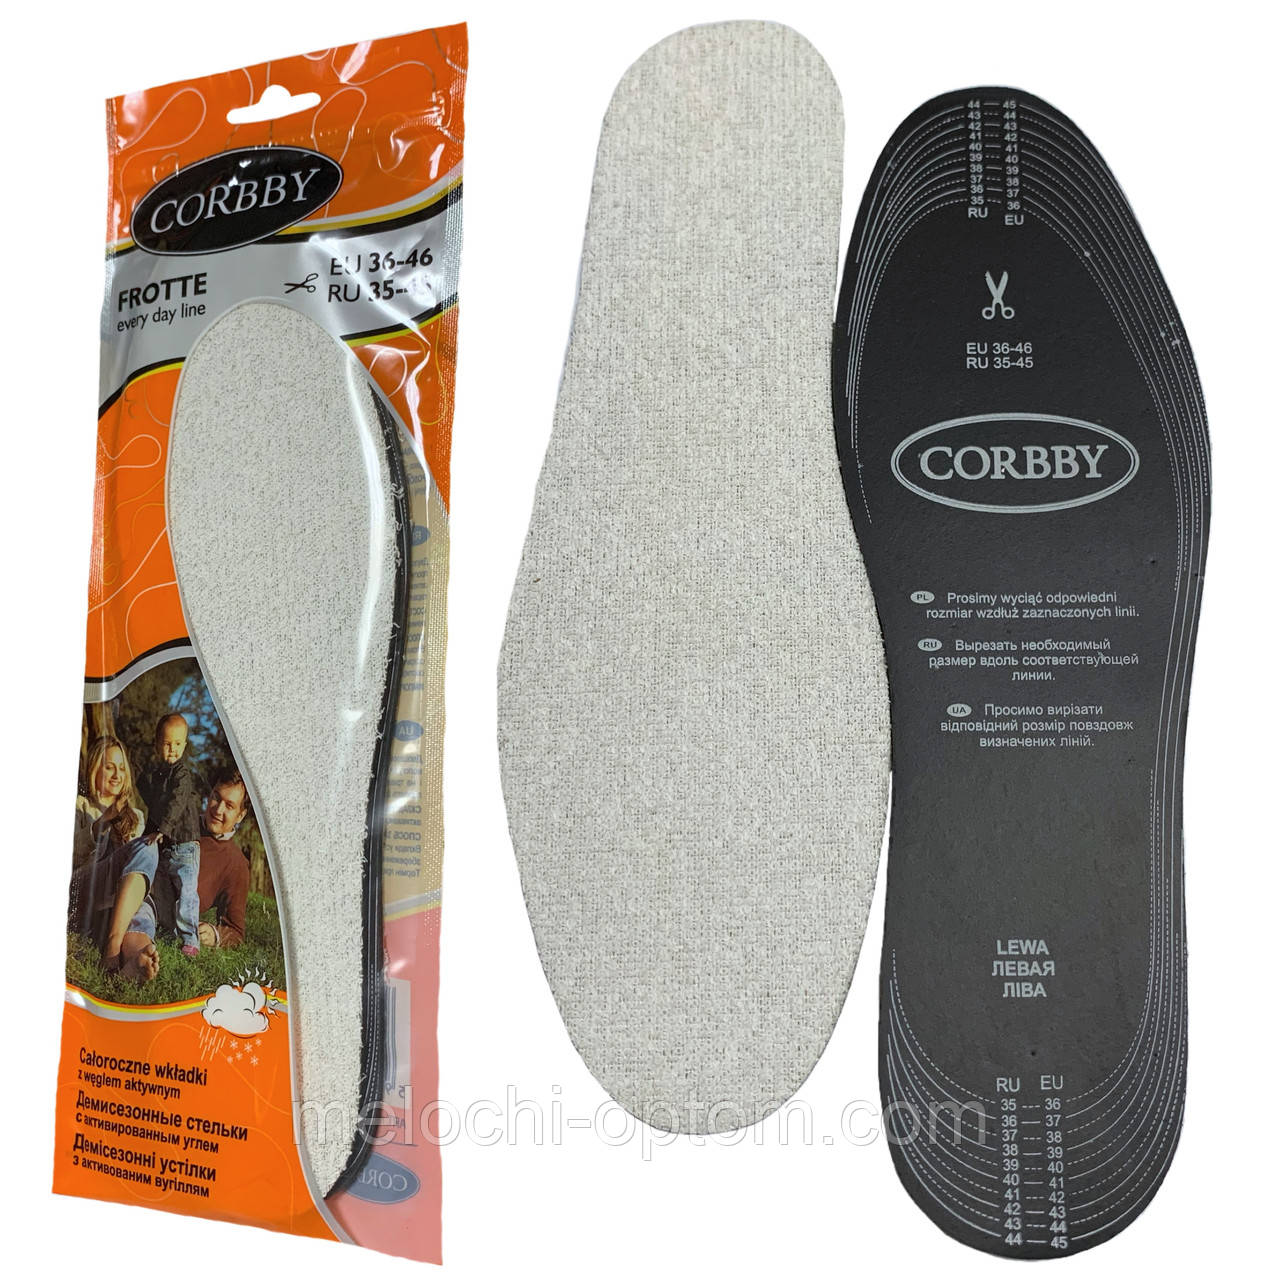 Устілки для взуття CORBBY FROTTE мультирозмір (35-46)